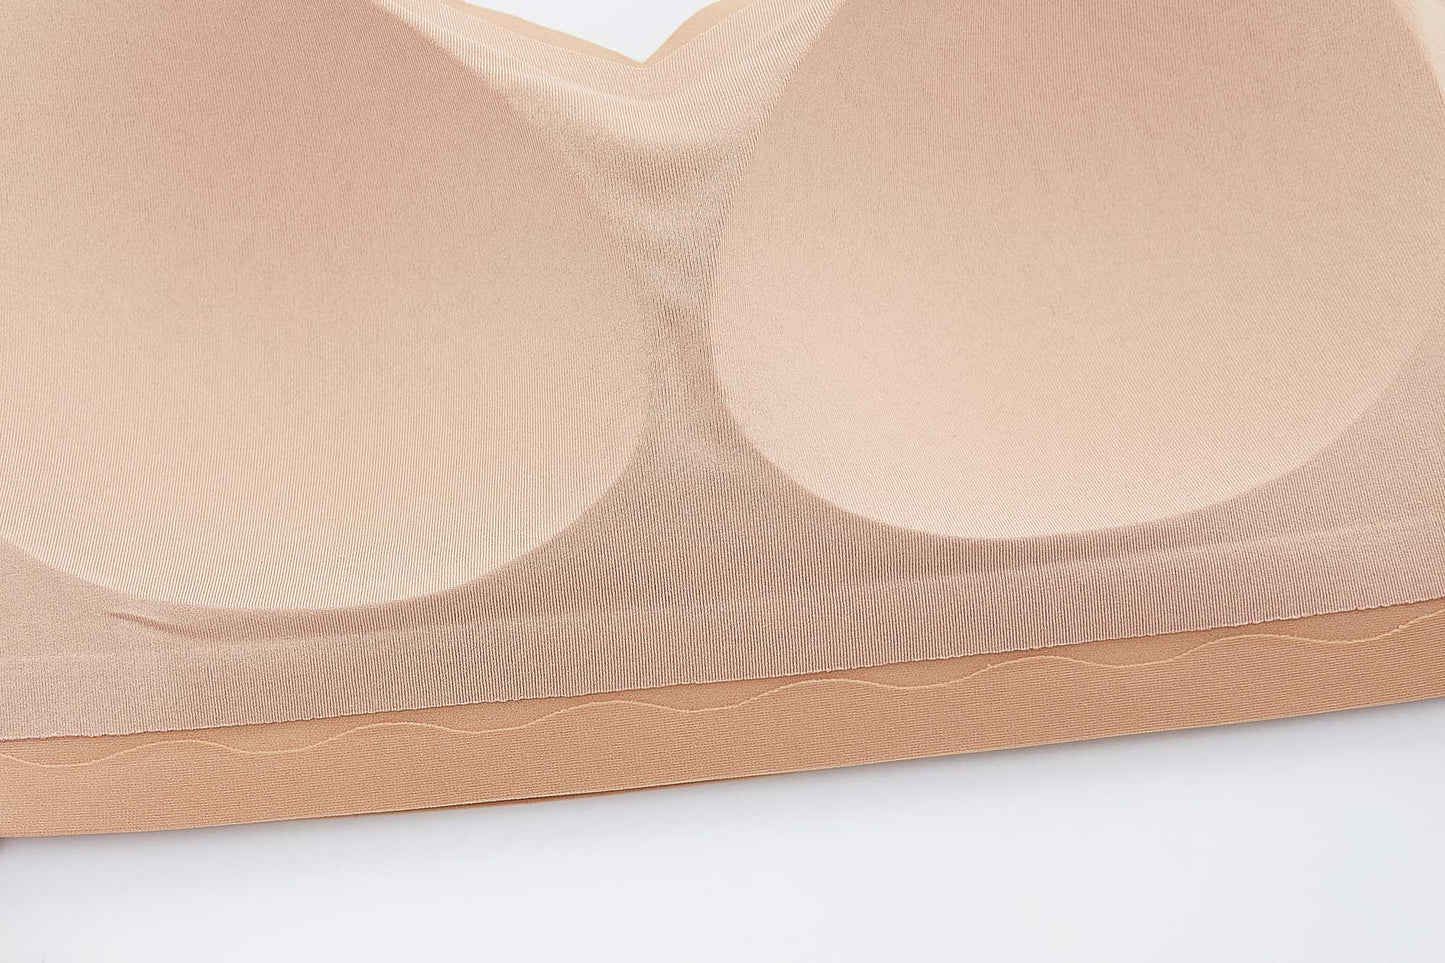 inside of tan bra